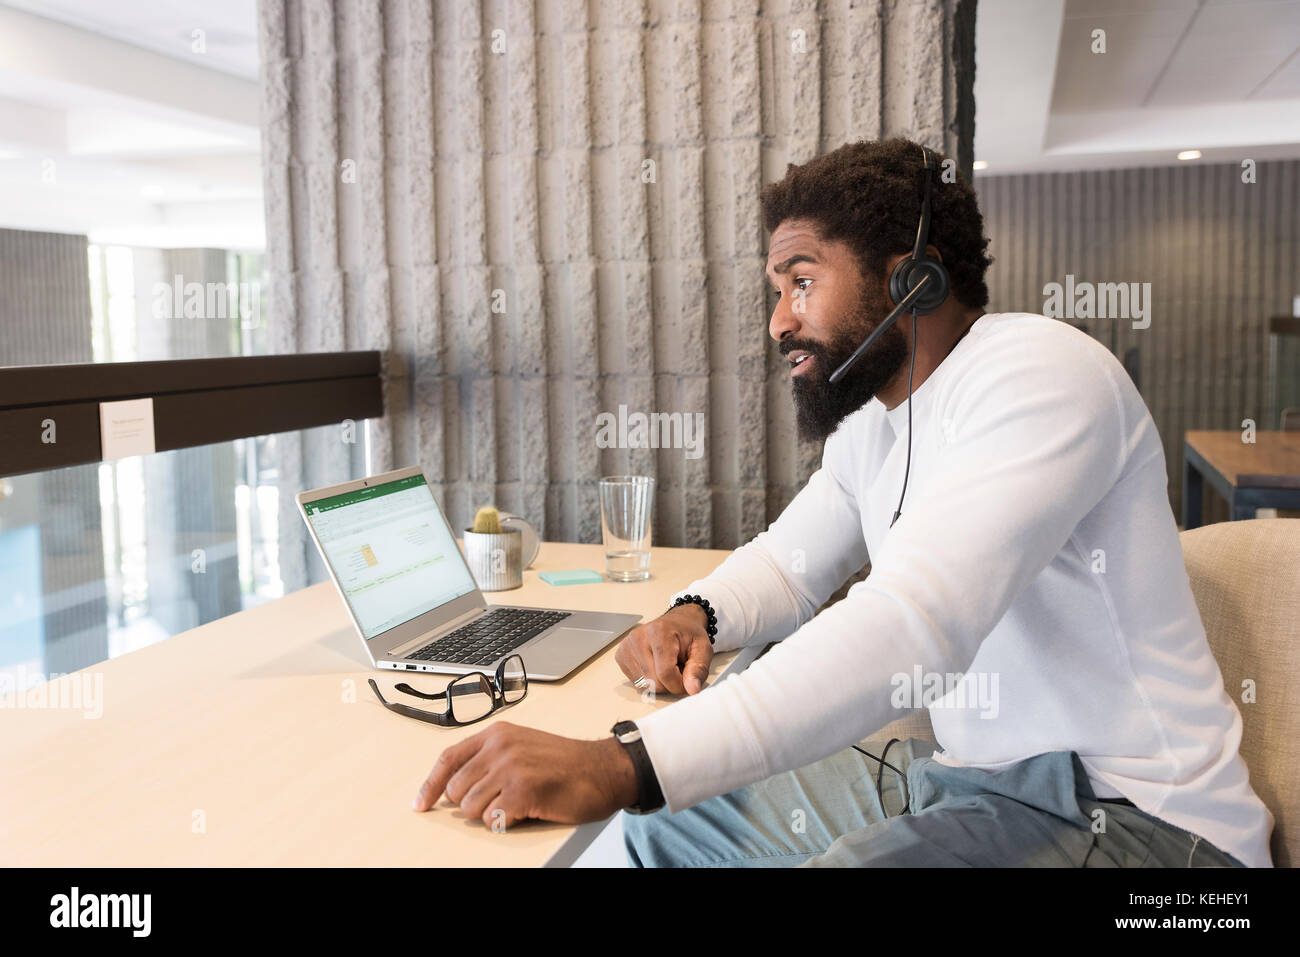 Black man wearing headset using laptop Stock Photo